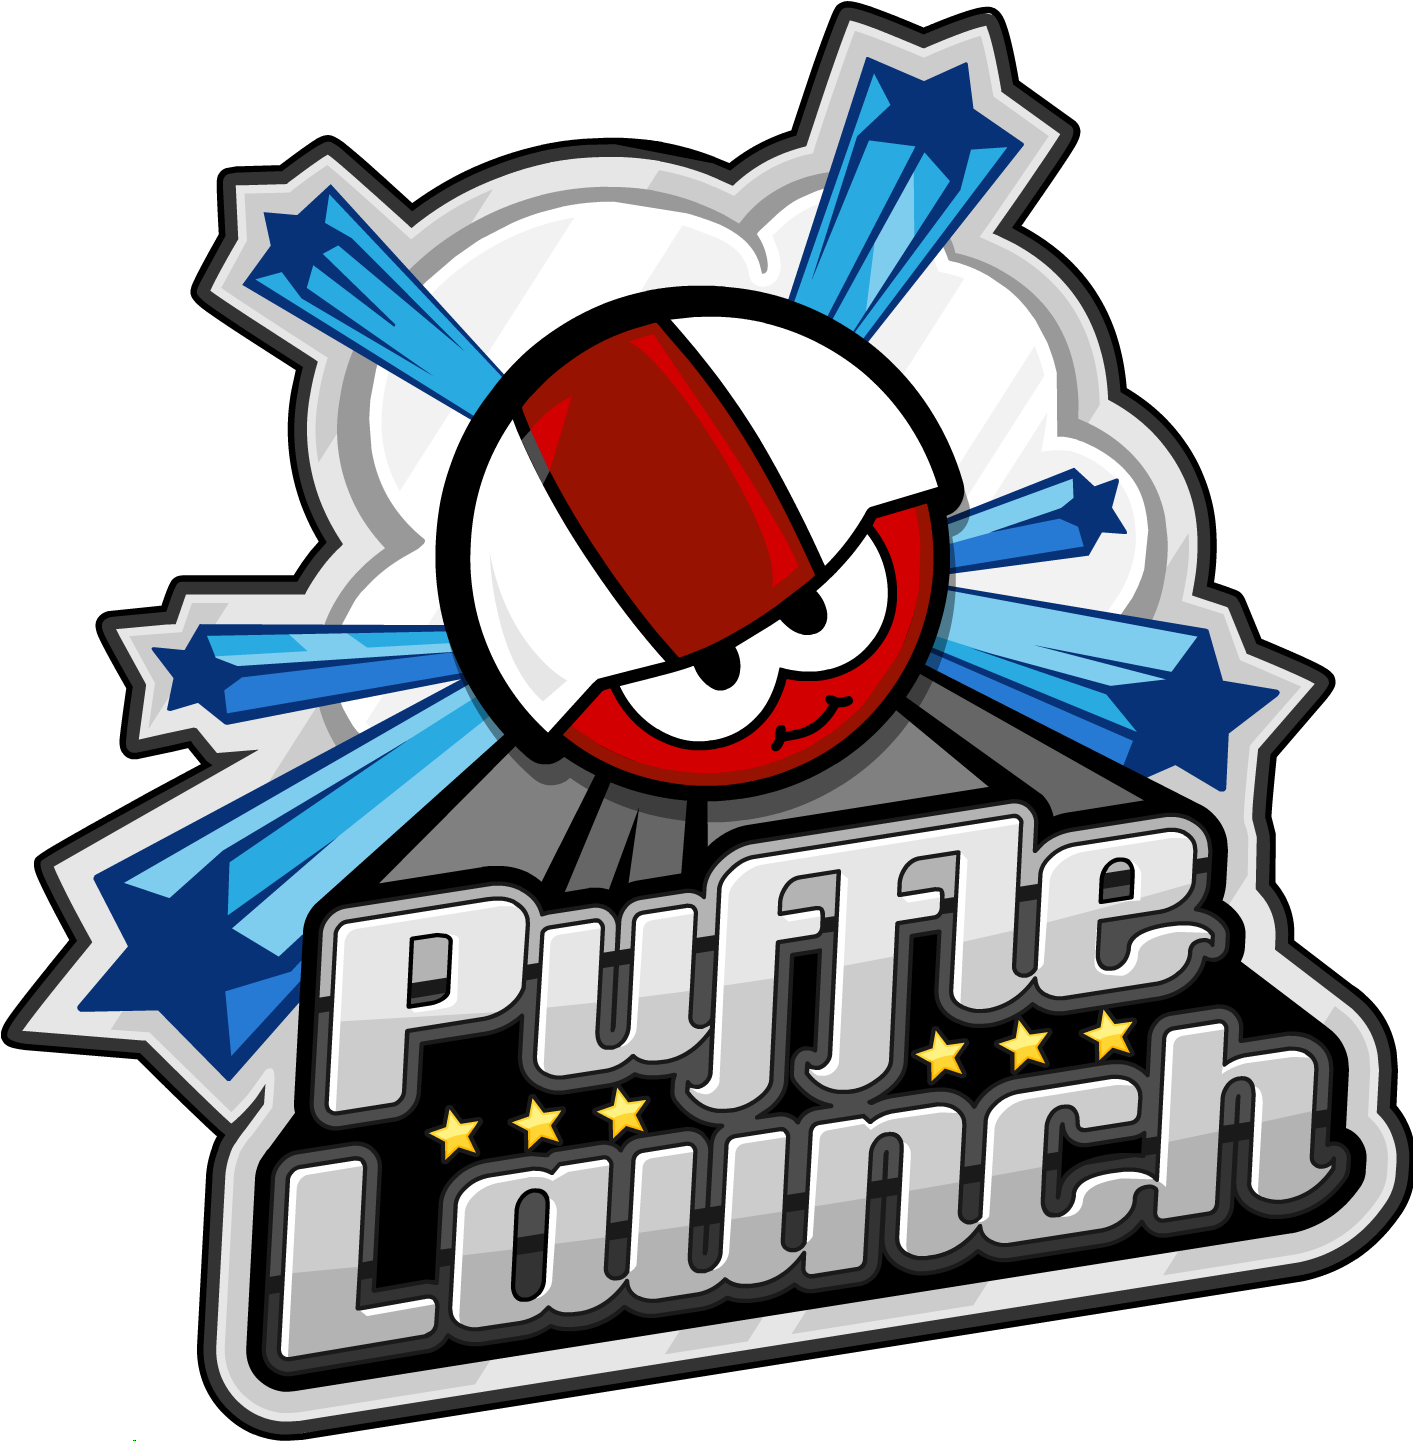 Puffle Launch - Club Penguin Puffle Launch Logo (1440x1440), Png Download